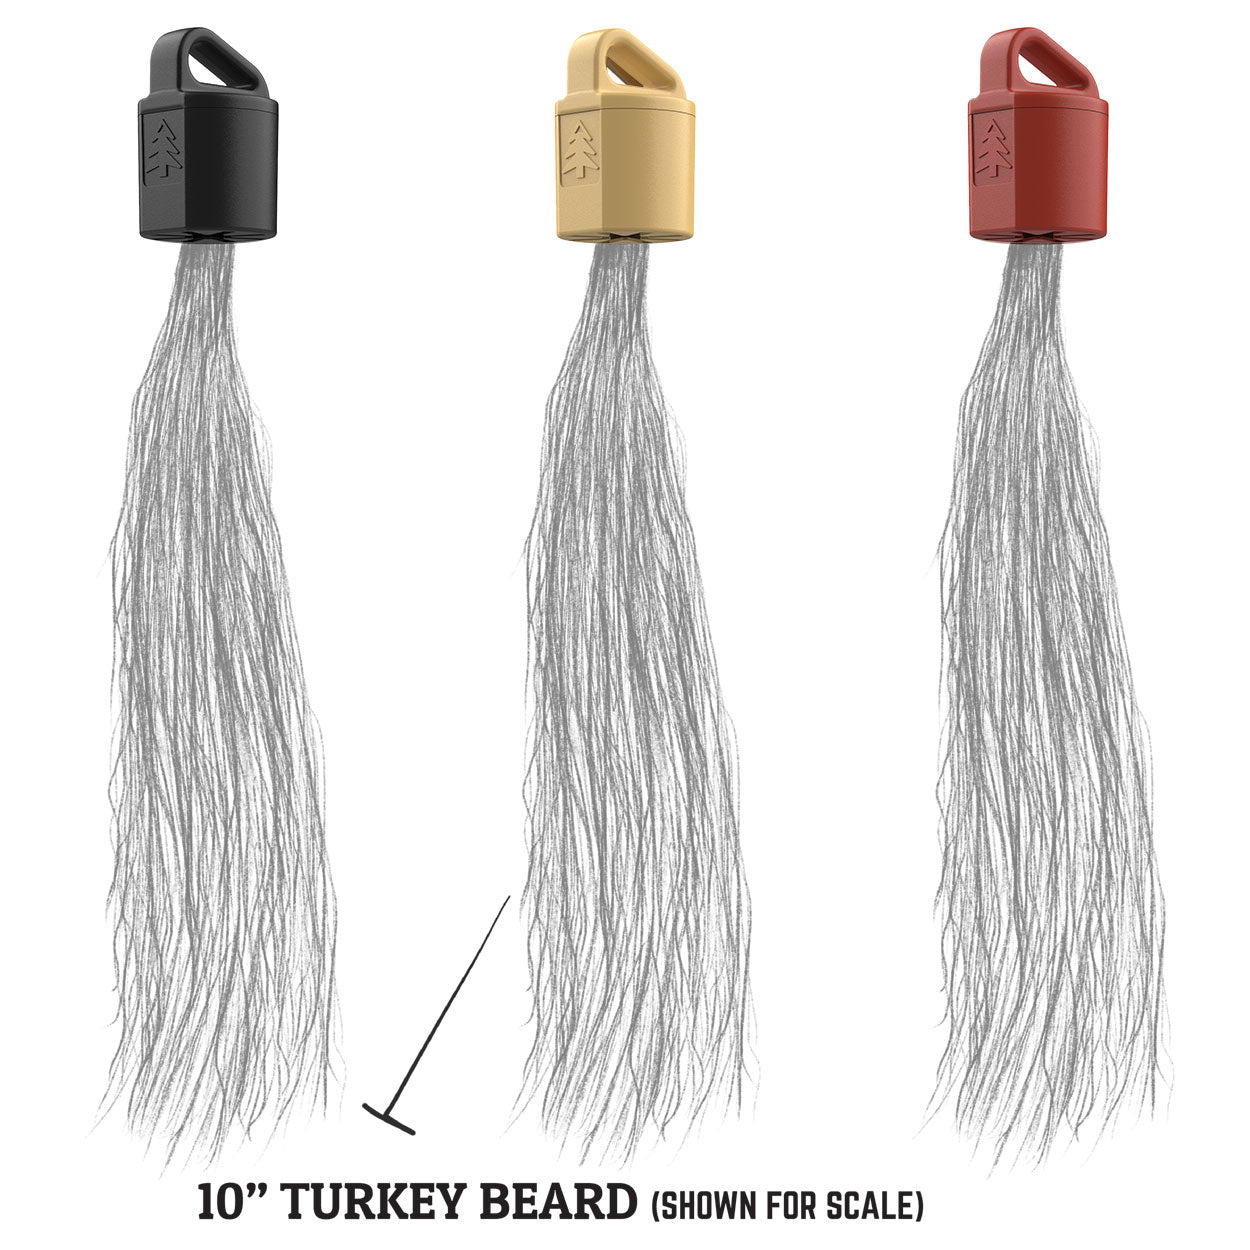 TURKEY BEARD HANGER (single)